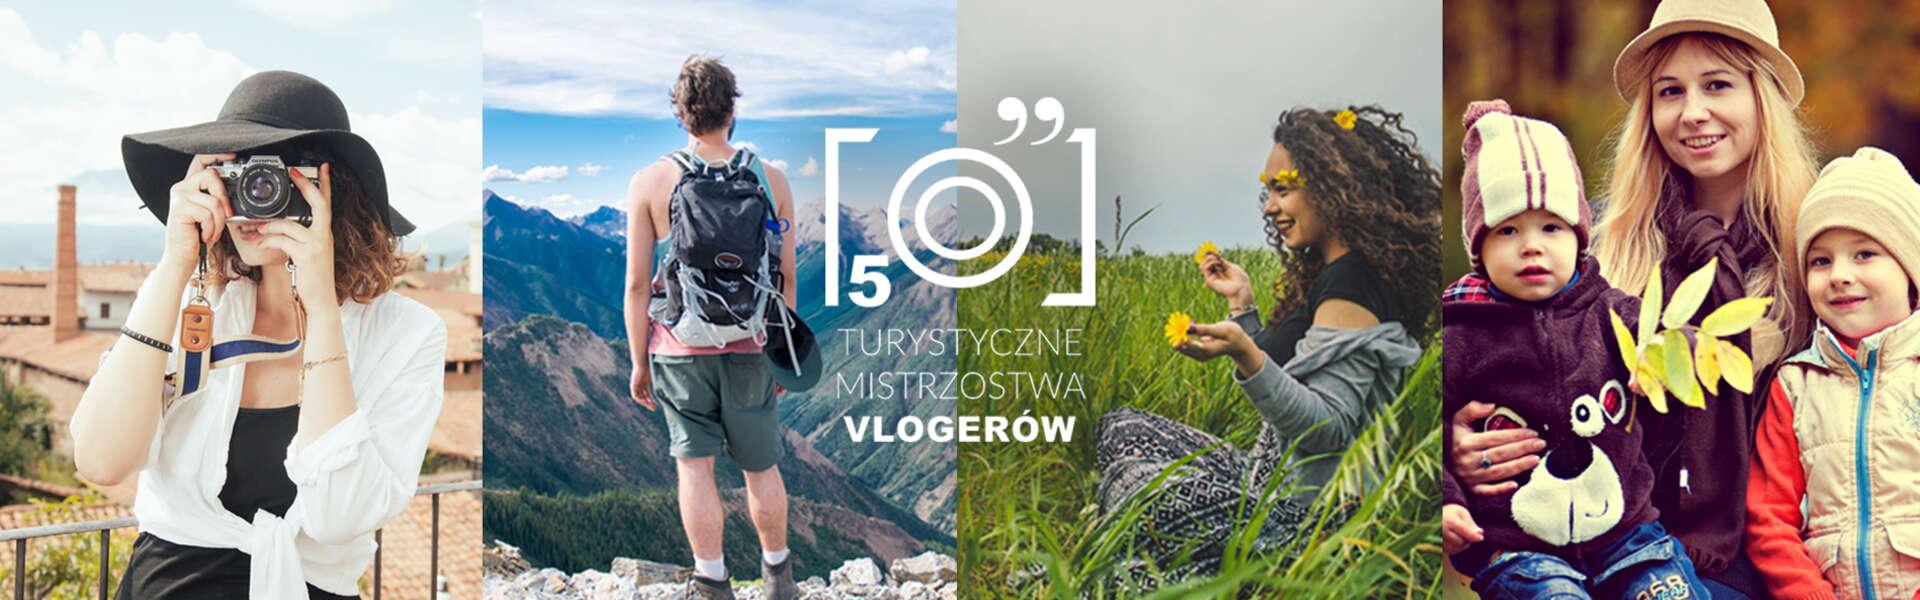 Image: Zagłosuj na Małopolskę - V Turystyczne Mistrzostwa Vlogerów!